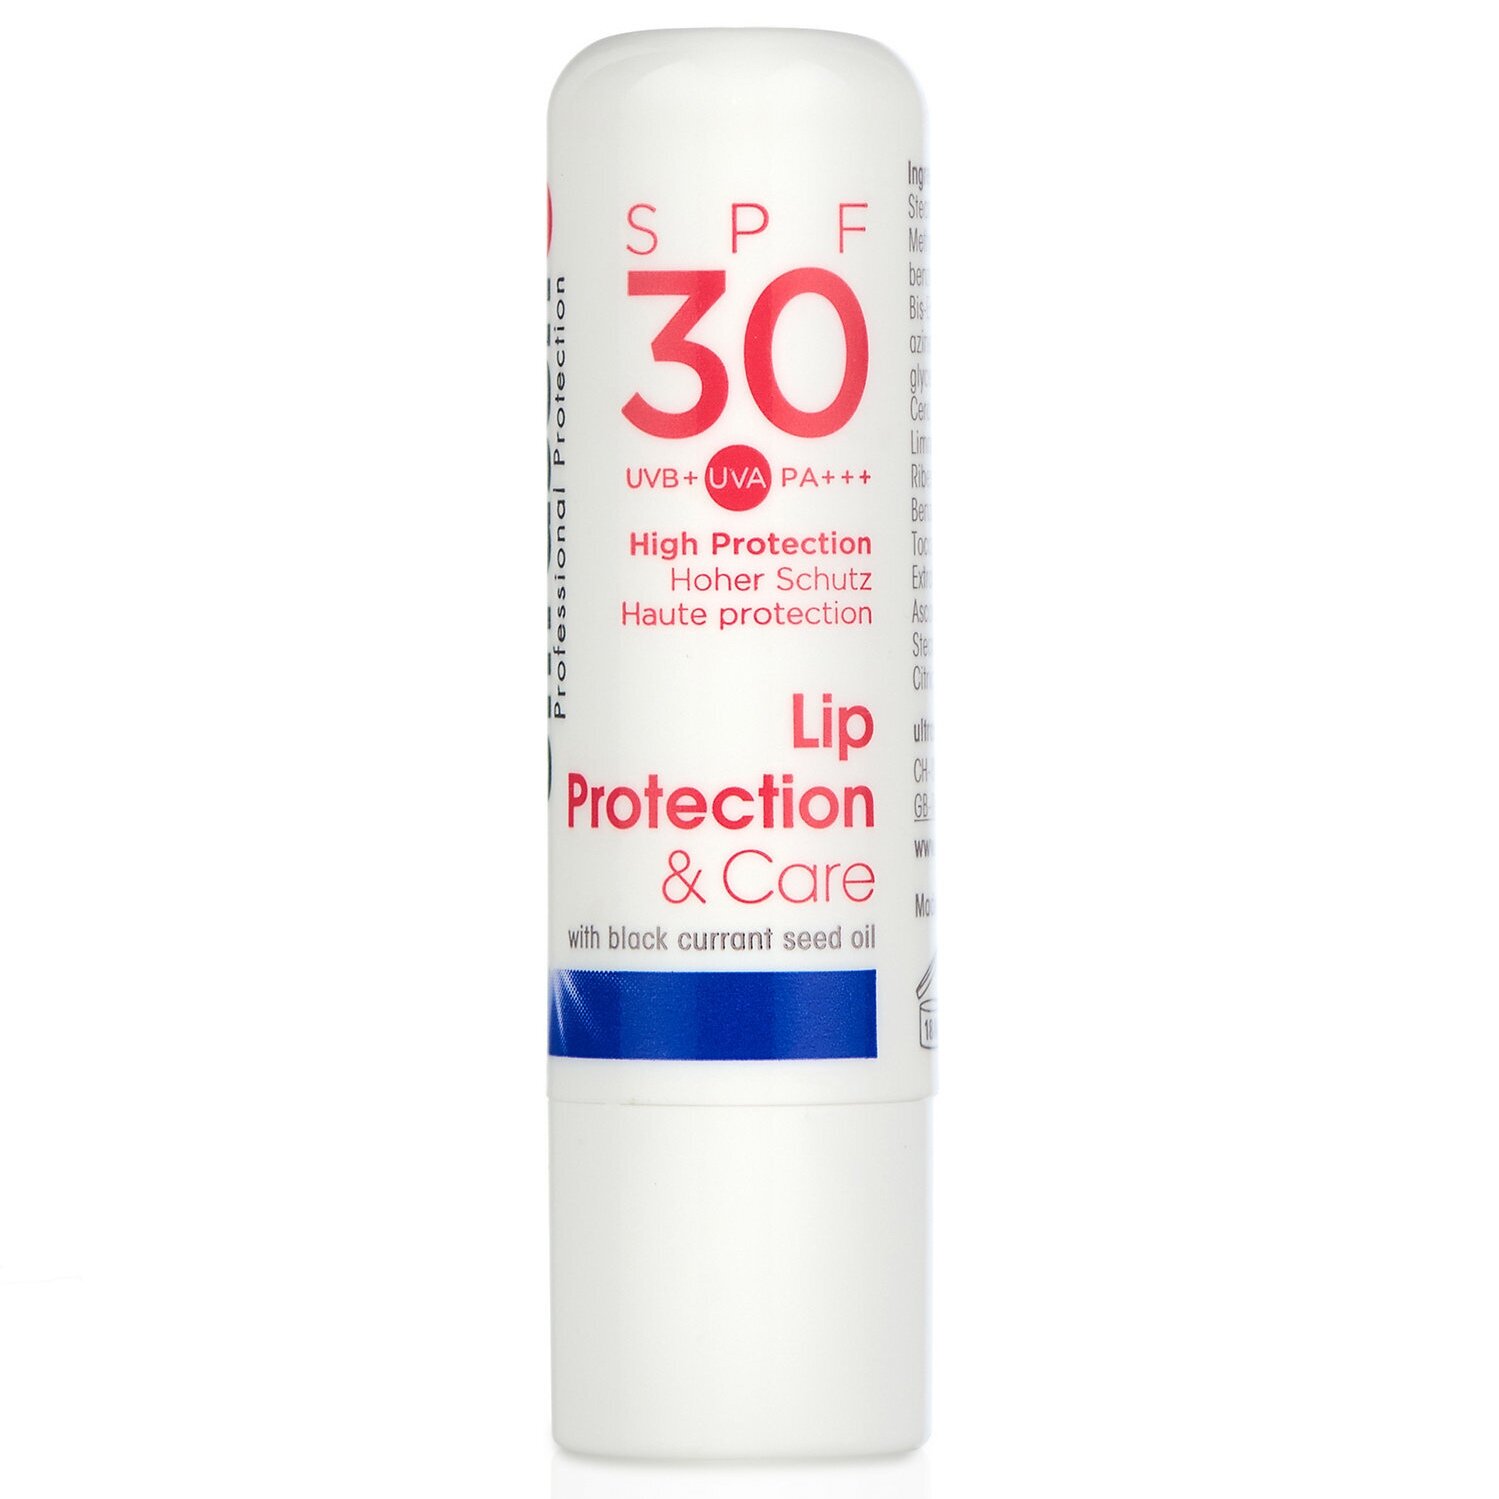 Ultrasun Lip Protection SPF 30, £6